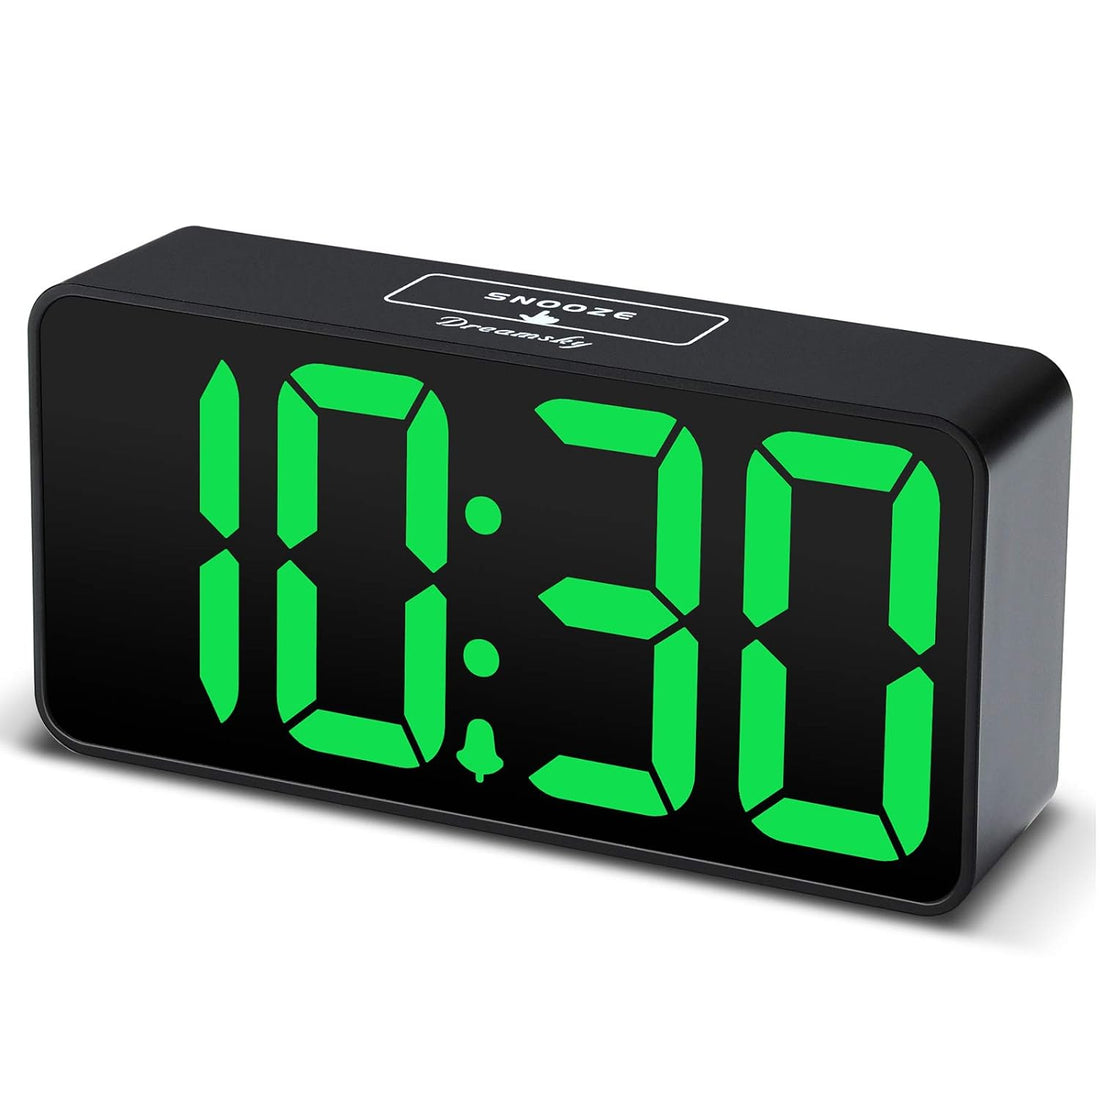 DreamSky Compact Digital Alarm Clock with USB Port for Charging, Adjustable Brightness Dimmer, Green Bold Digit Display, 12/24Hr, Snooze, Adjustable Alarm Volume, Small Desk Bedroom Bedside Clocks